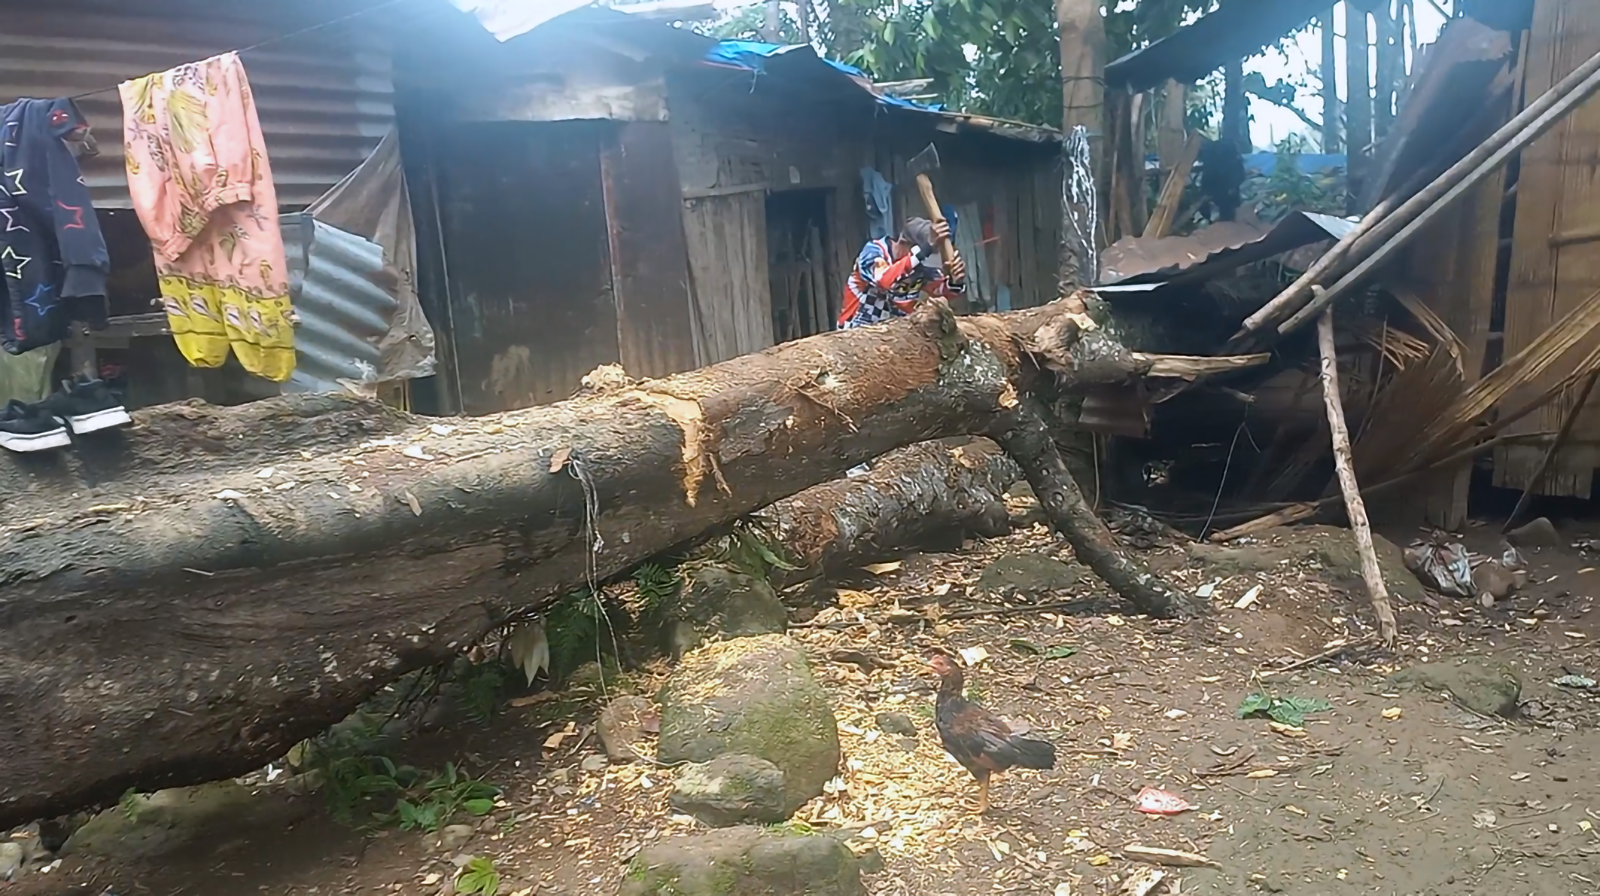 Huge marang tree fell on a nearby house in Barangay Bongolanon. 